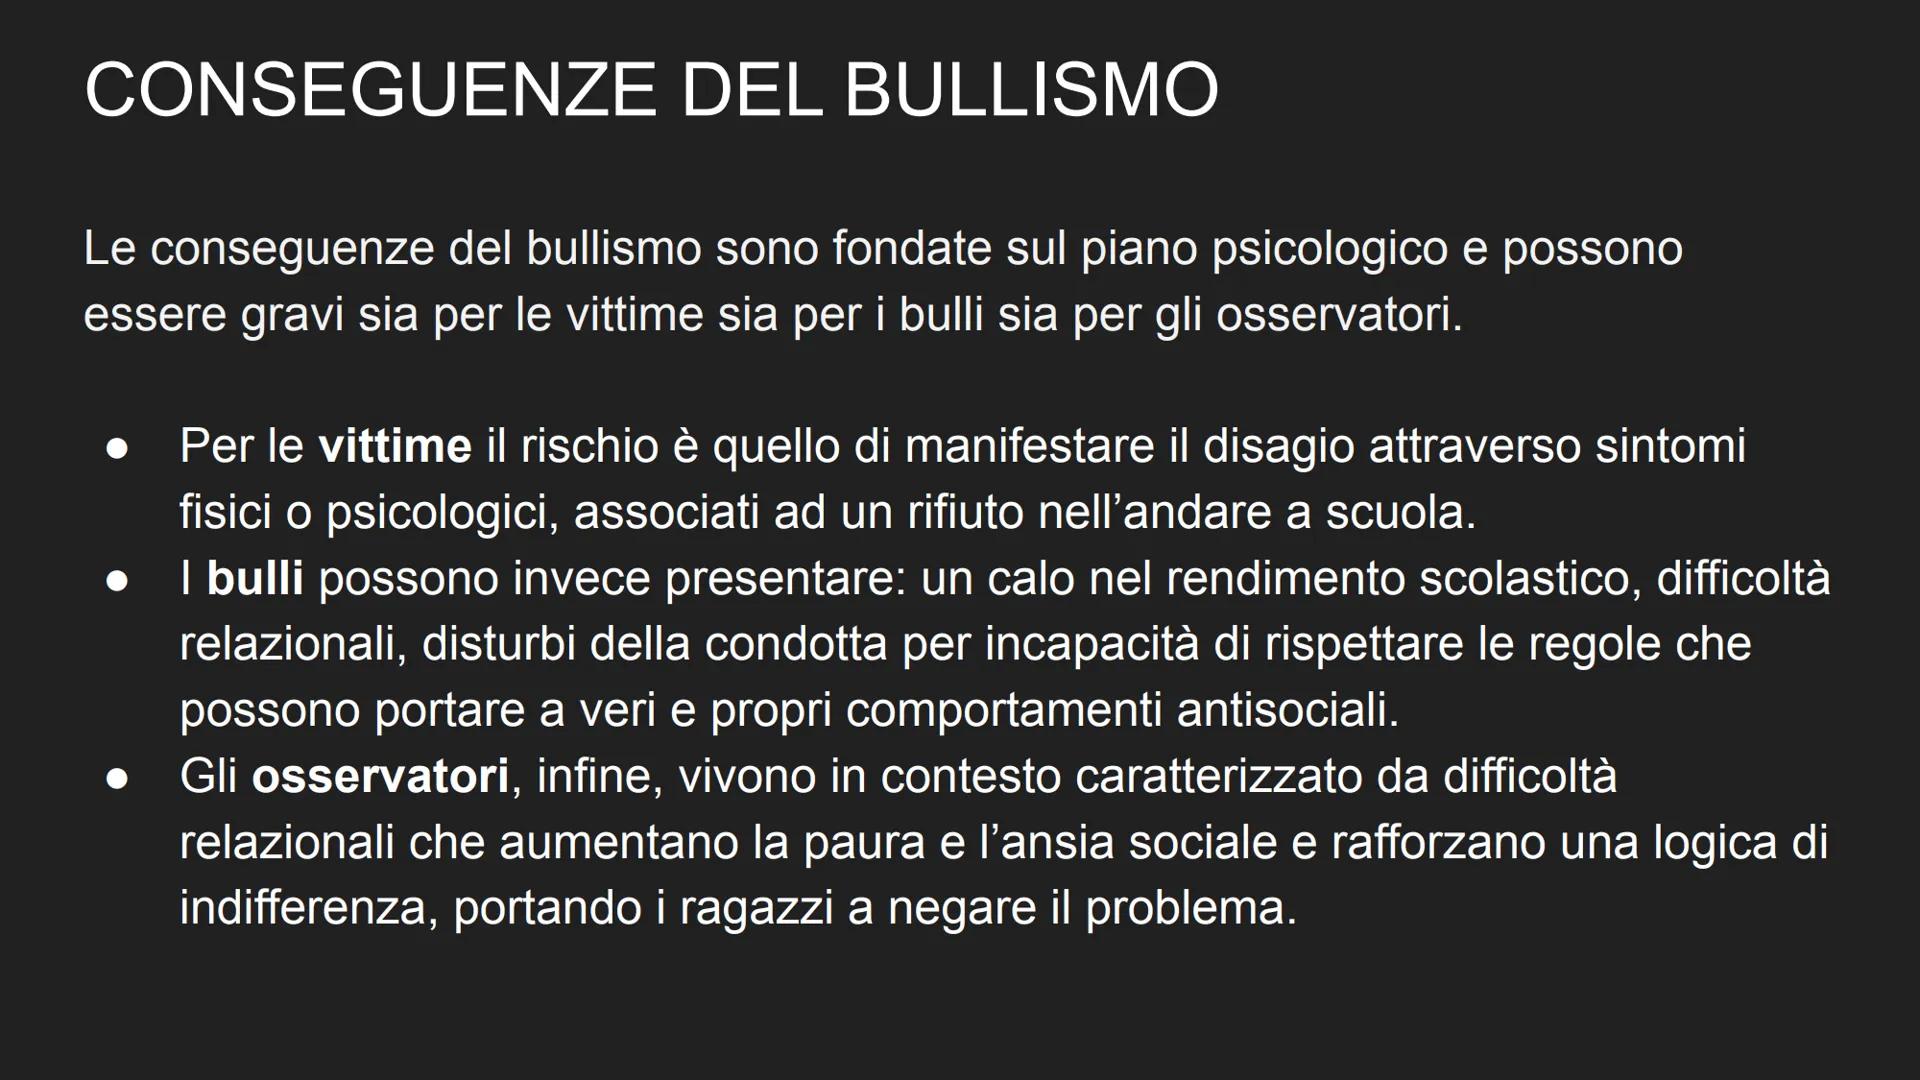 IL BULLISMO
BULLISMO
by: Messina Silvia CHE COS'É IL BULLISMO?
Con il termine bullismo si Intende un comportamento aggressivo e ripetitivo n